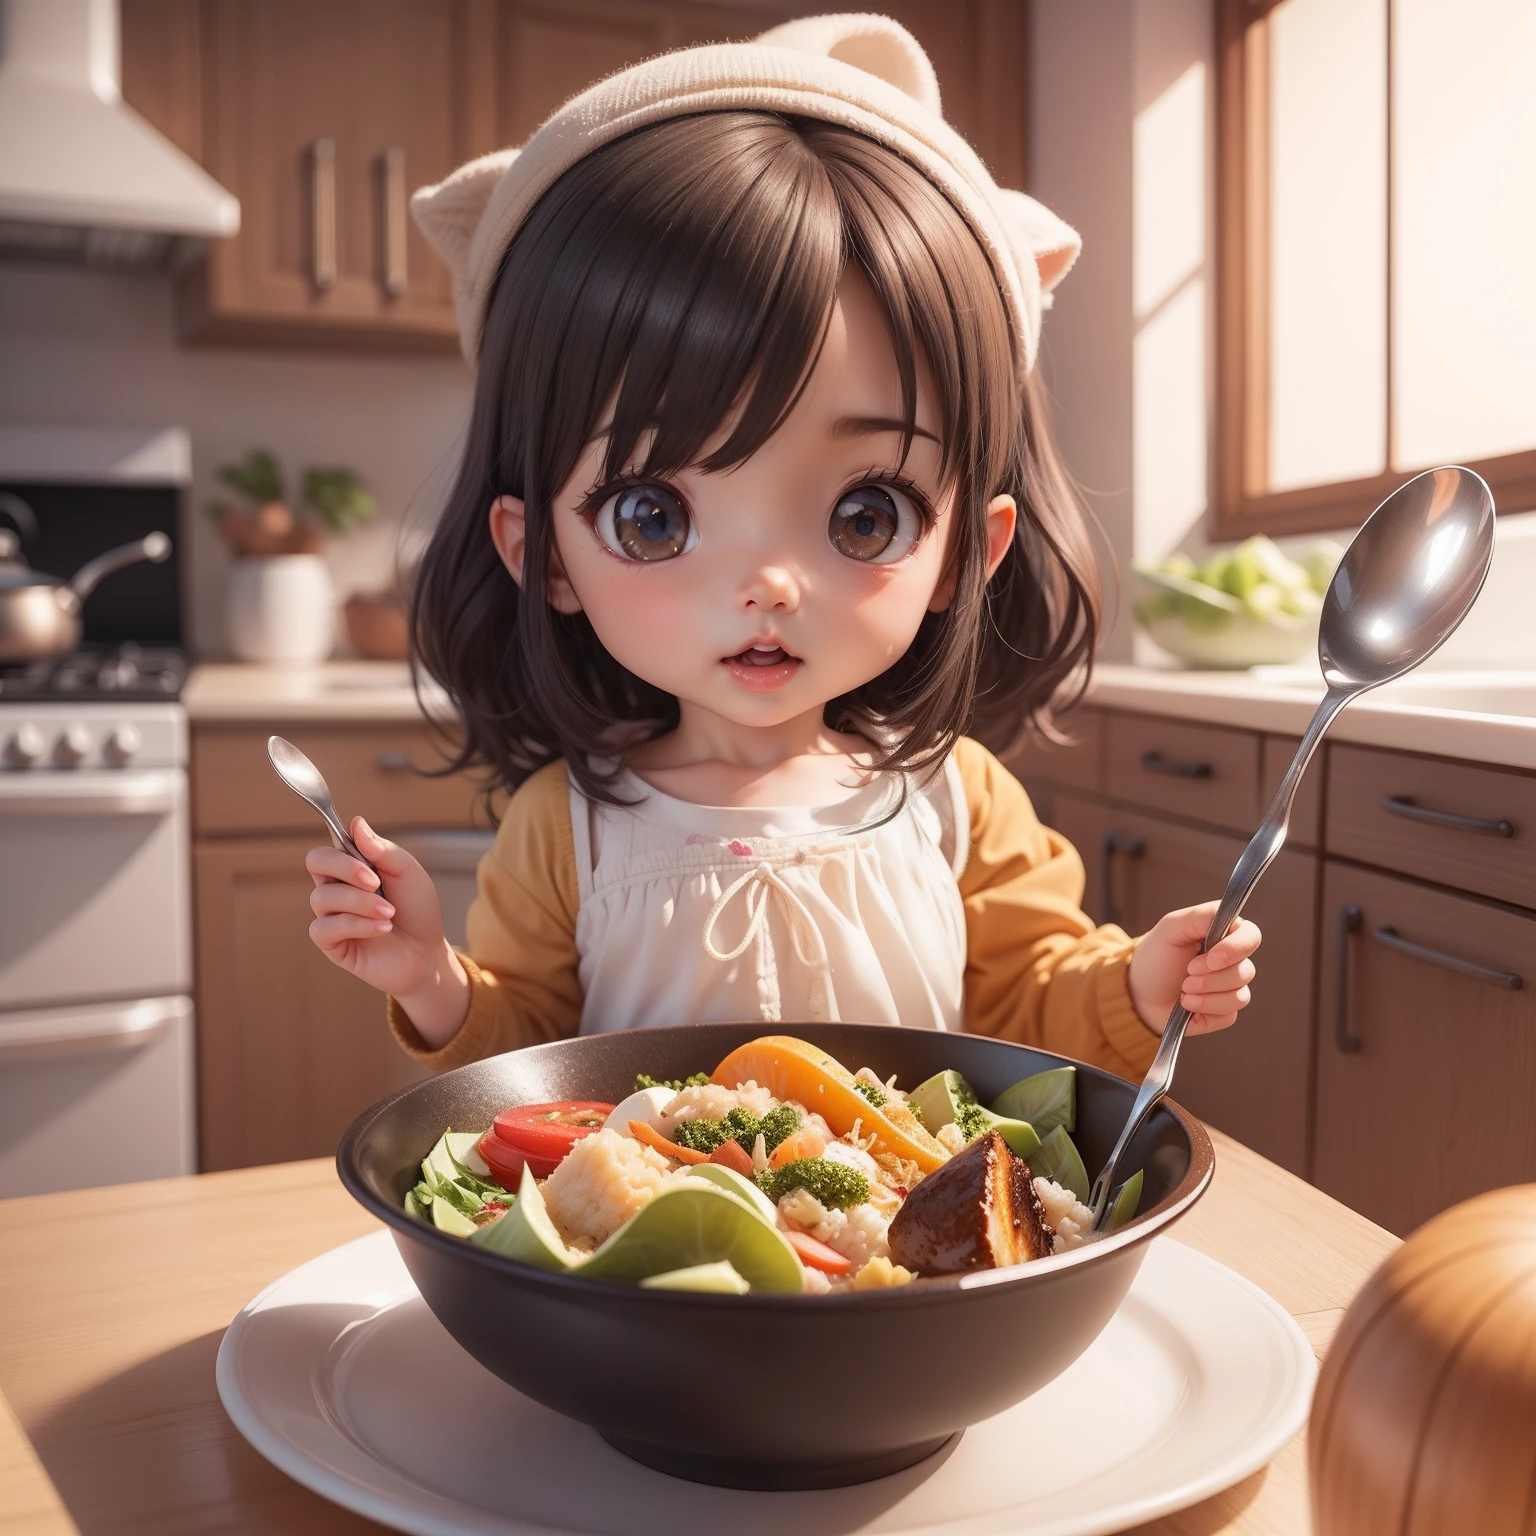 귀여운 아기 꼬마 애니메이션、(((꼬마 3D))) (최고의 품질), (테이블 탑)、スプーン🥄を持って、お皿に乗ったカレーライス🍛を食べる、물 한잔、야채 샐러드 그릇、치비 키친、검은 머리、군침이 도는